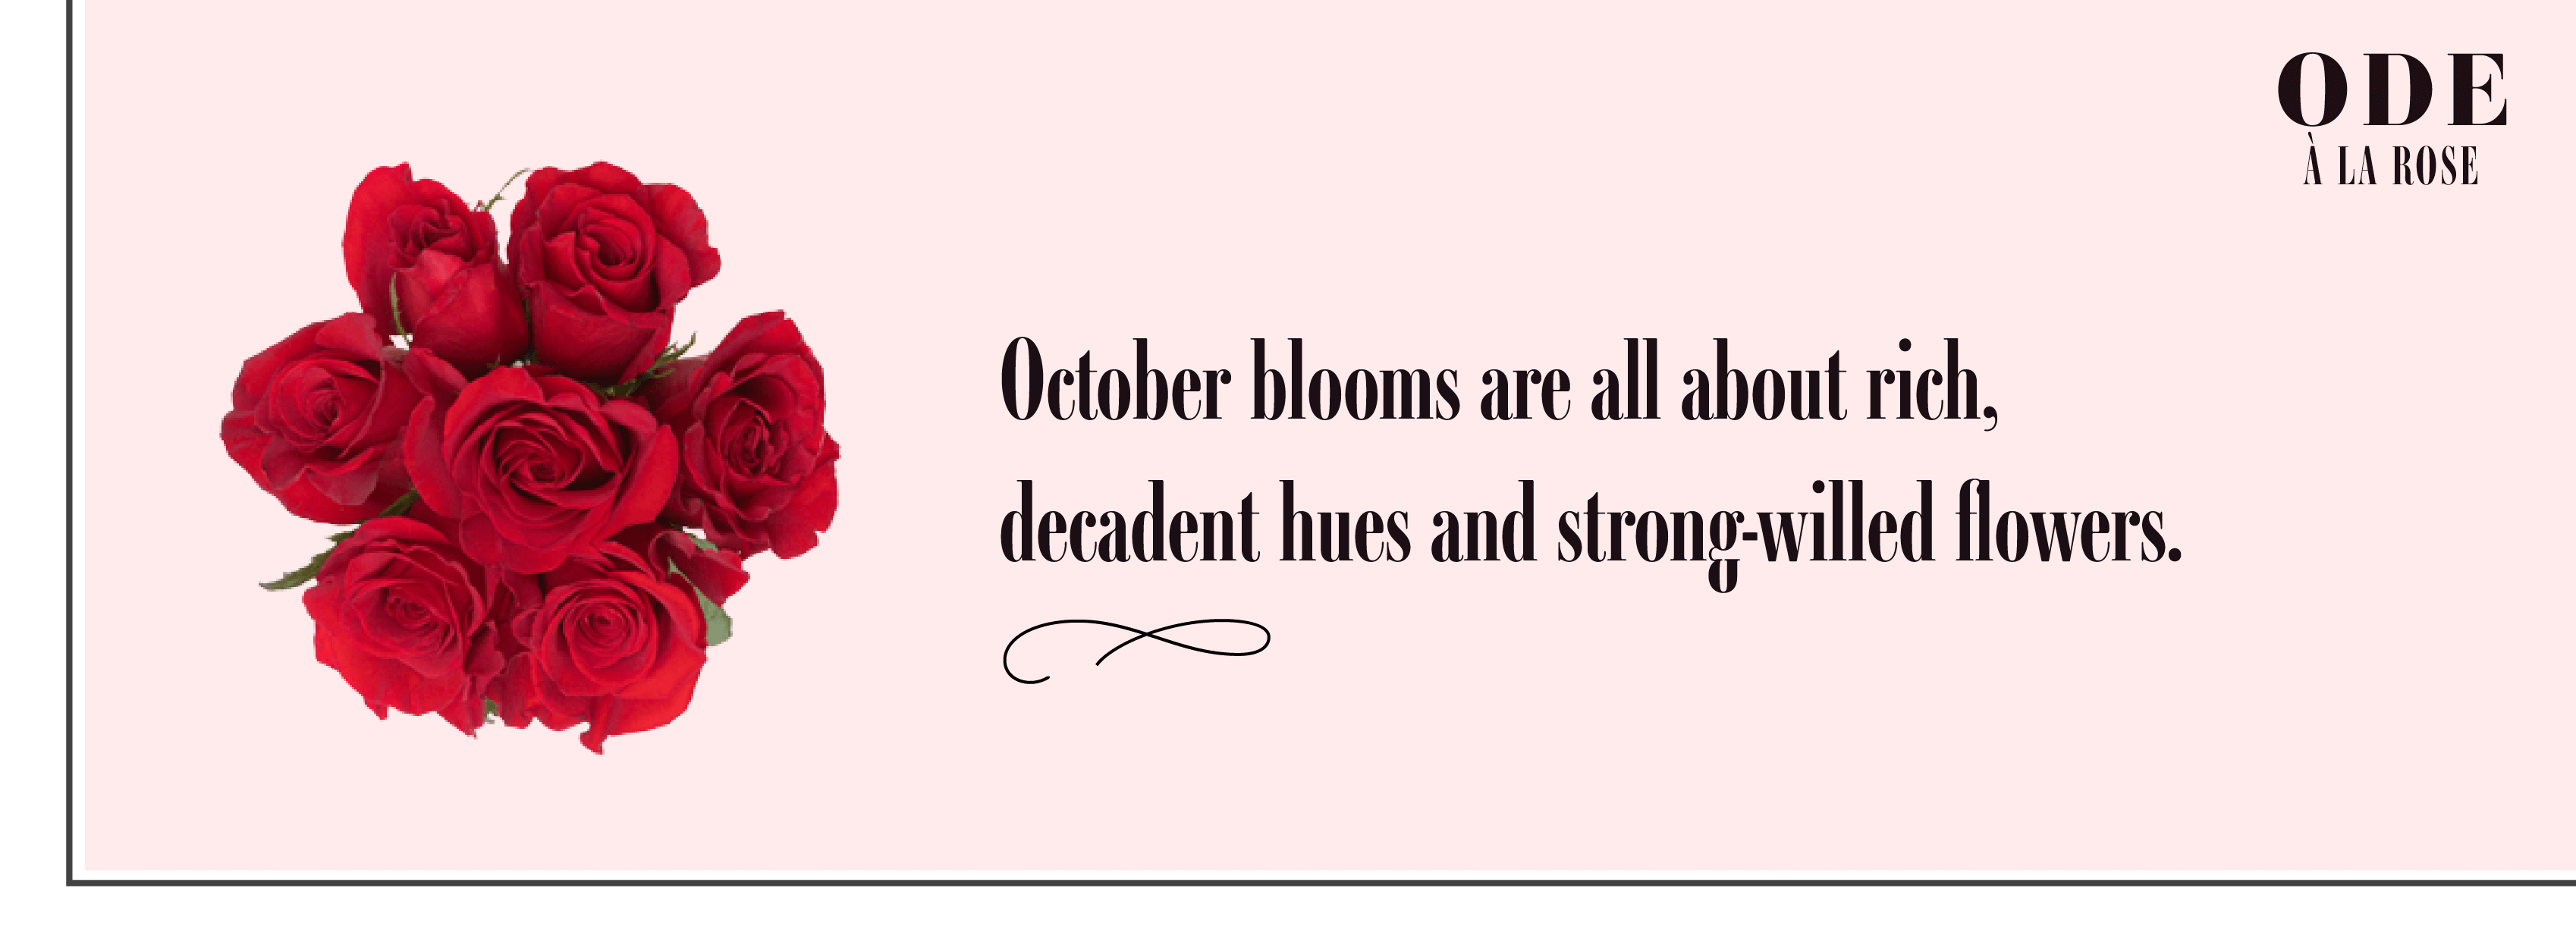 October blooms